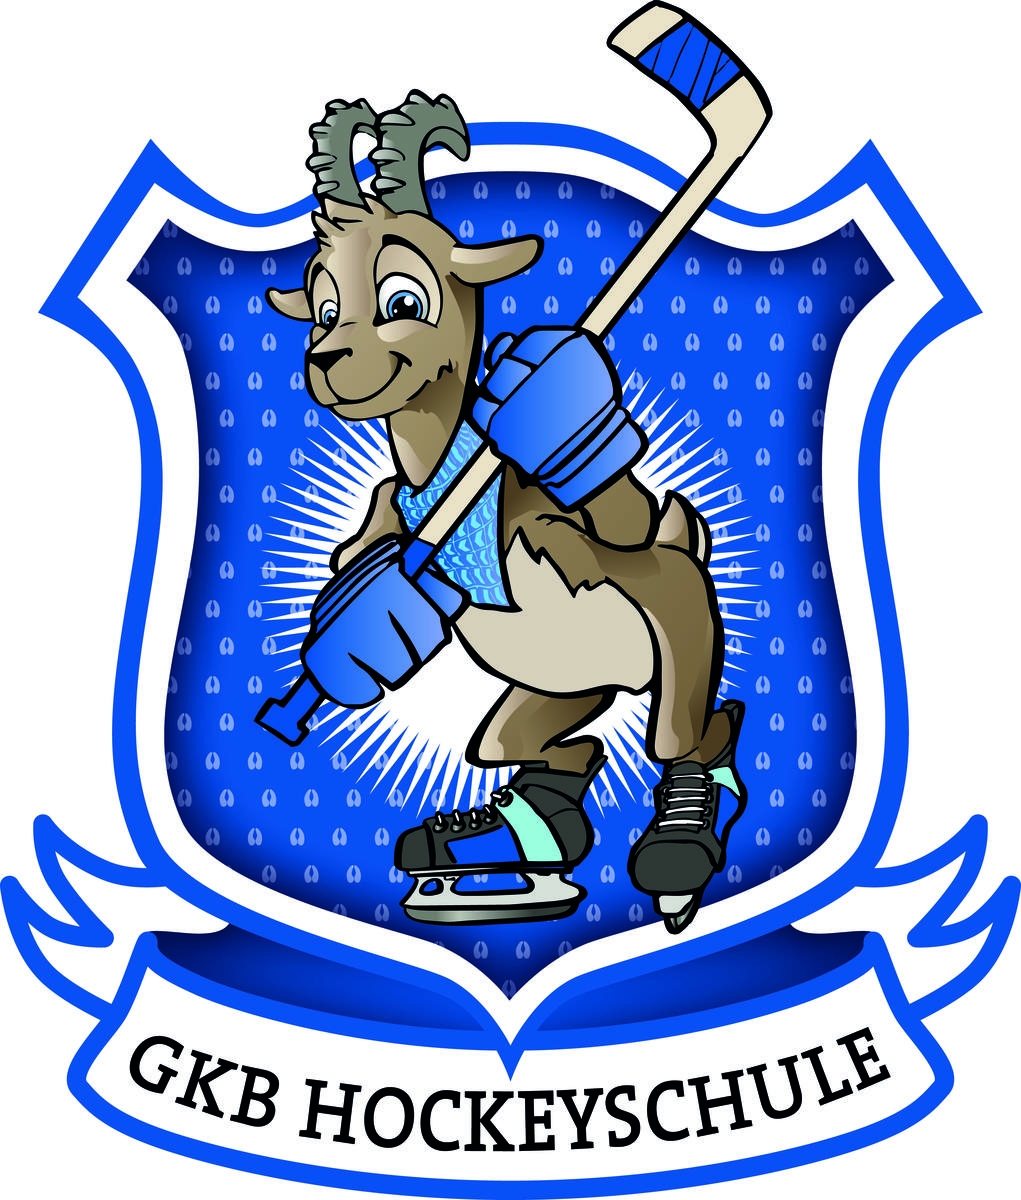 GKB Hockeyschule